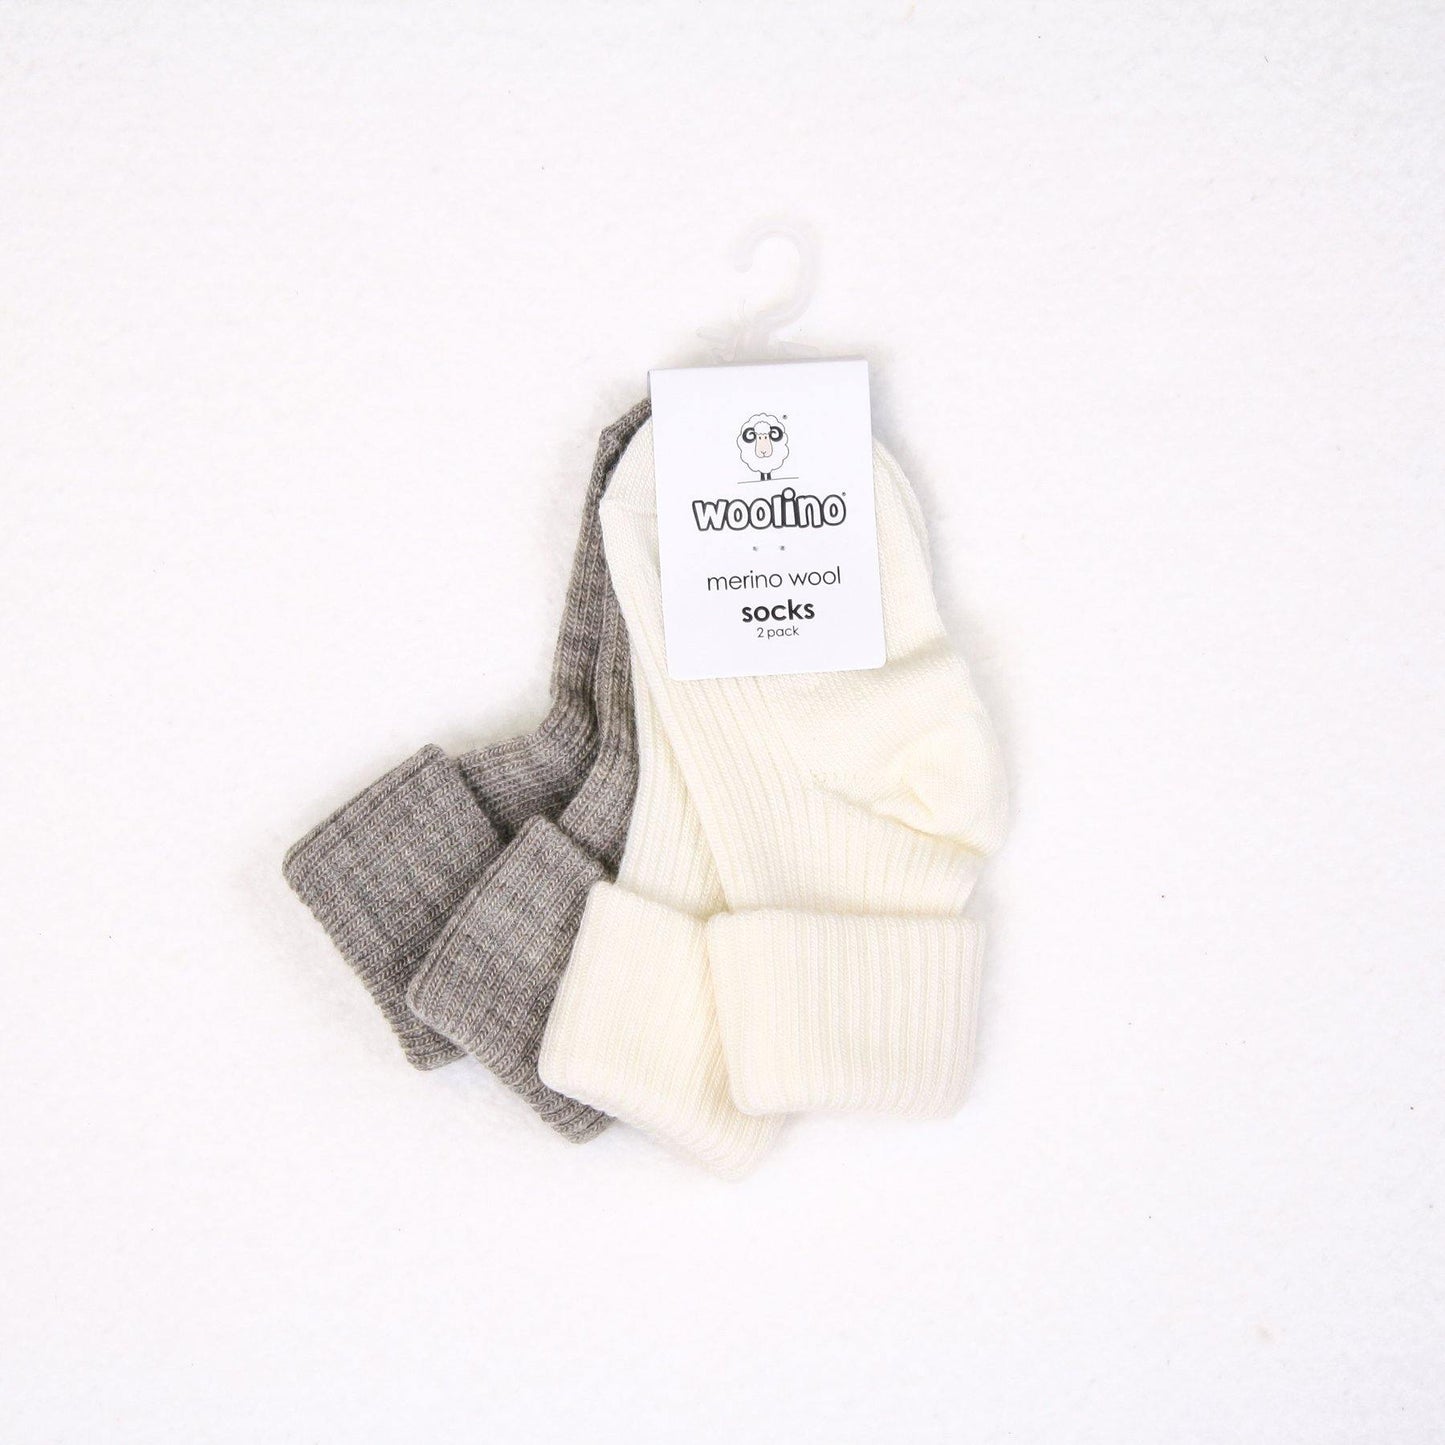 Woolino Merino Wool Baby Socks - 2 Pairs - Gray/White